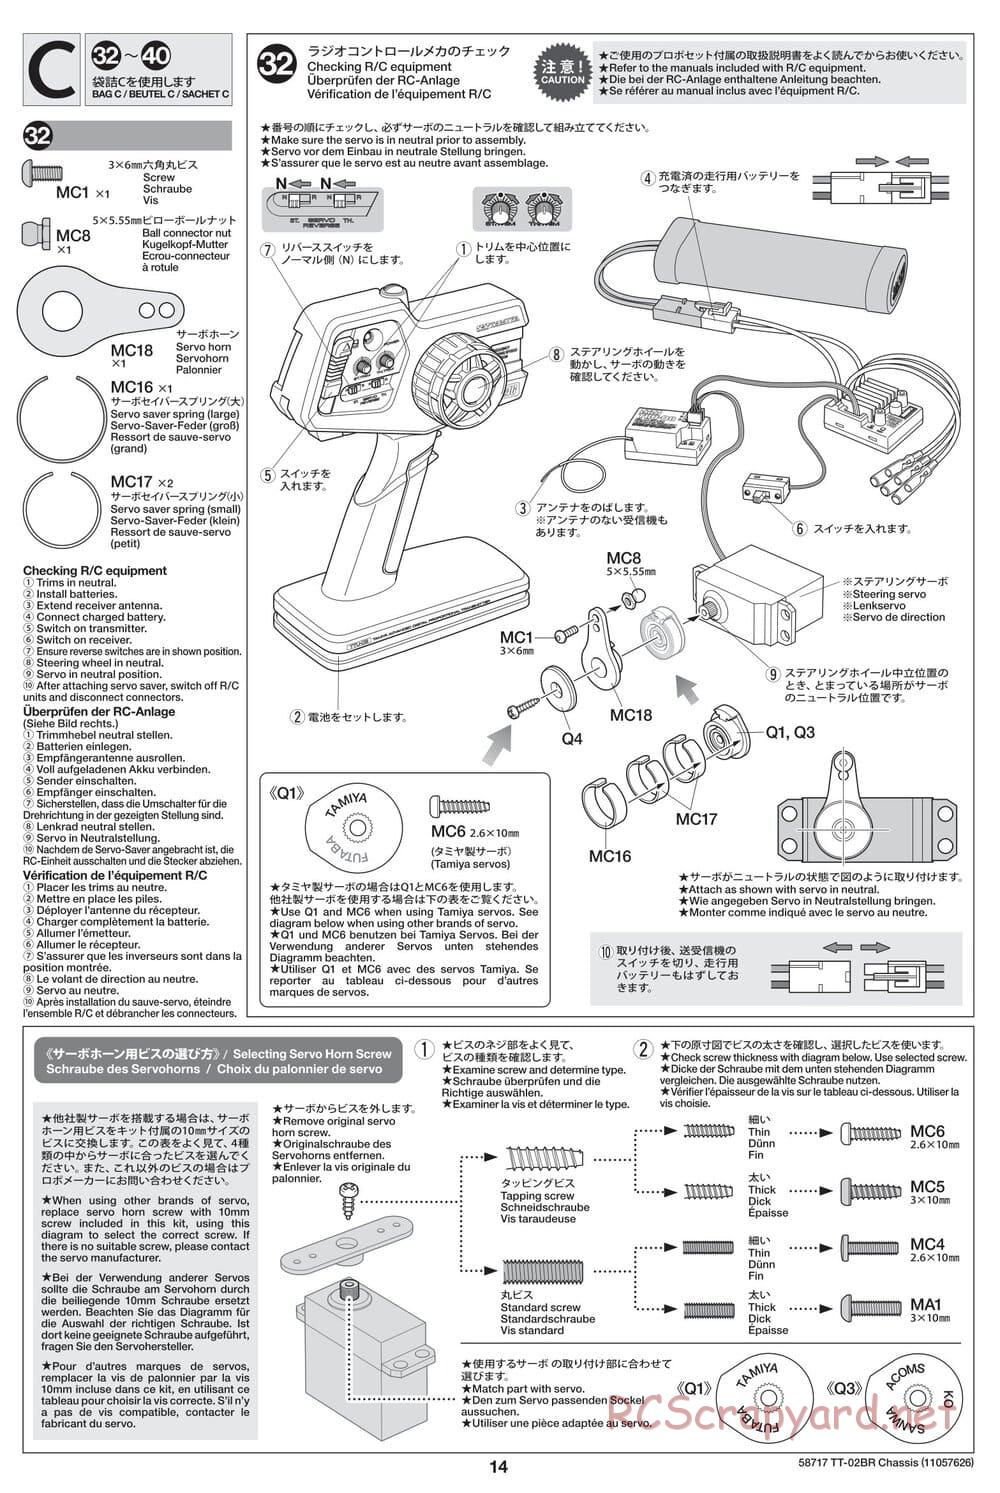 Tamiya - TT-02BR Chassis - Manual - Page 14